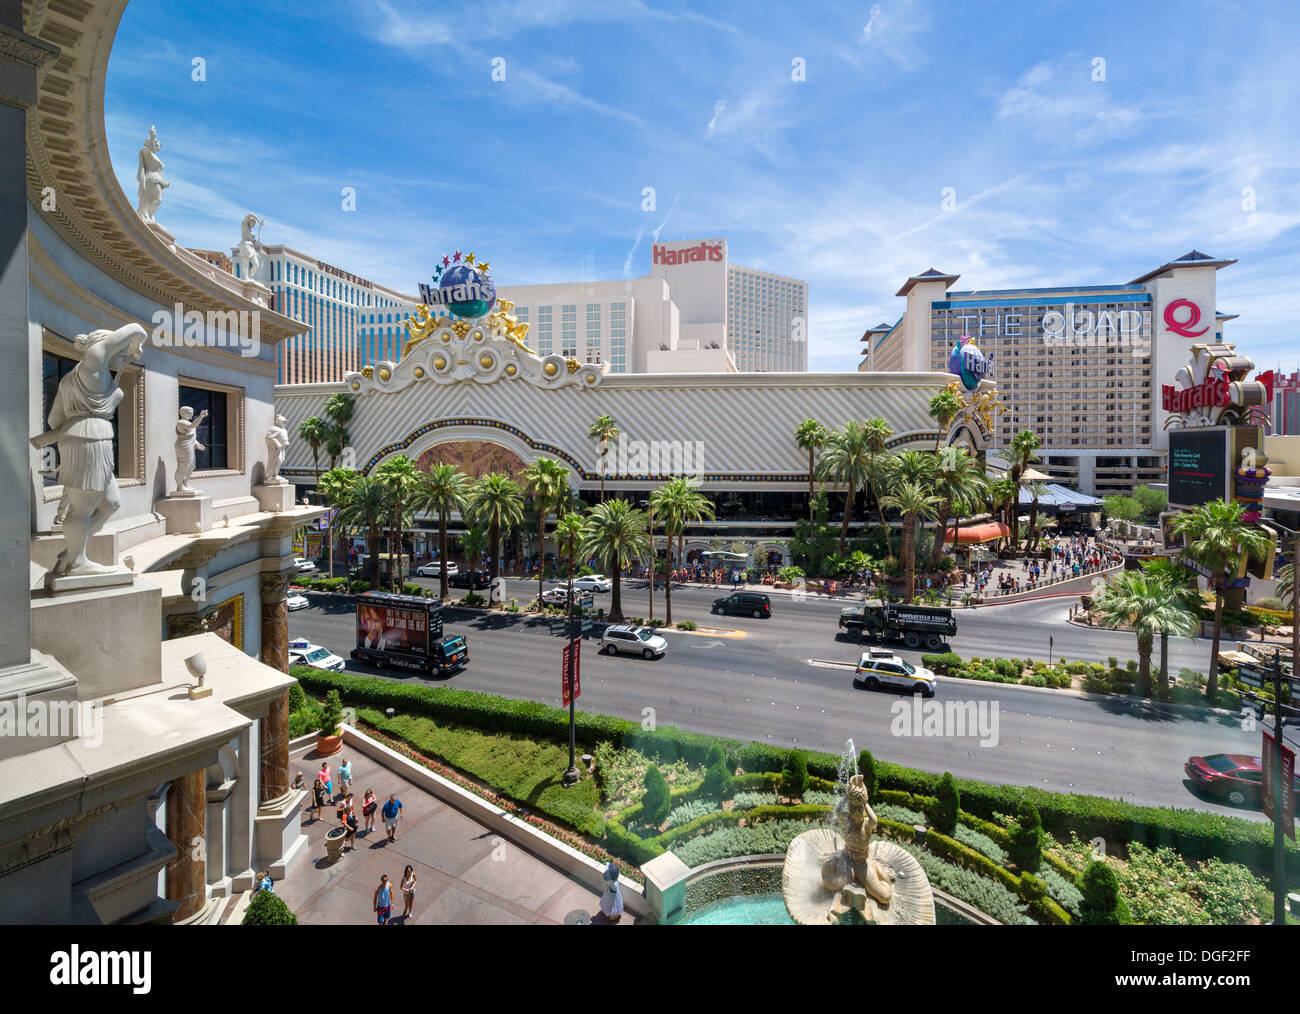 Harrah's et les casinos Quad vu du Forum Shops at Caesars, Las Vegas Boulevard (le Strip), Las Vegas, Nevada, USA Banque D'Images